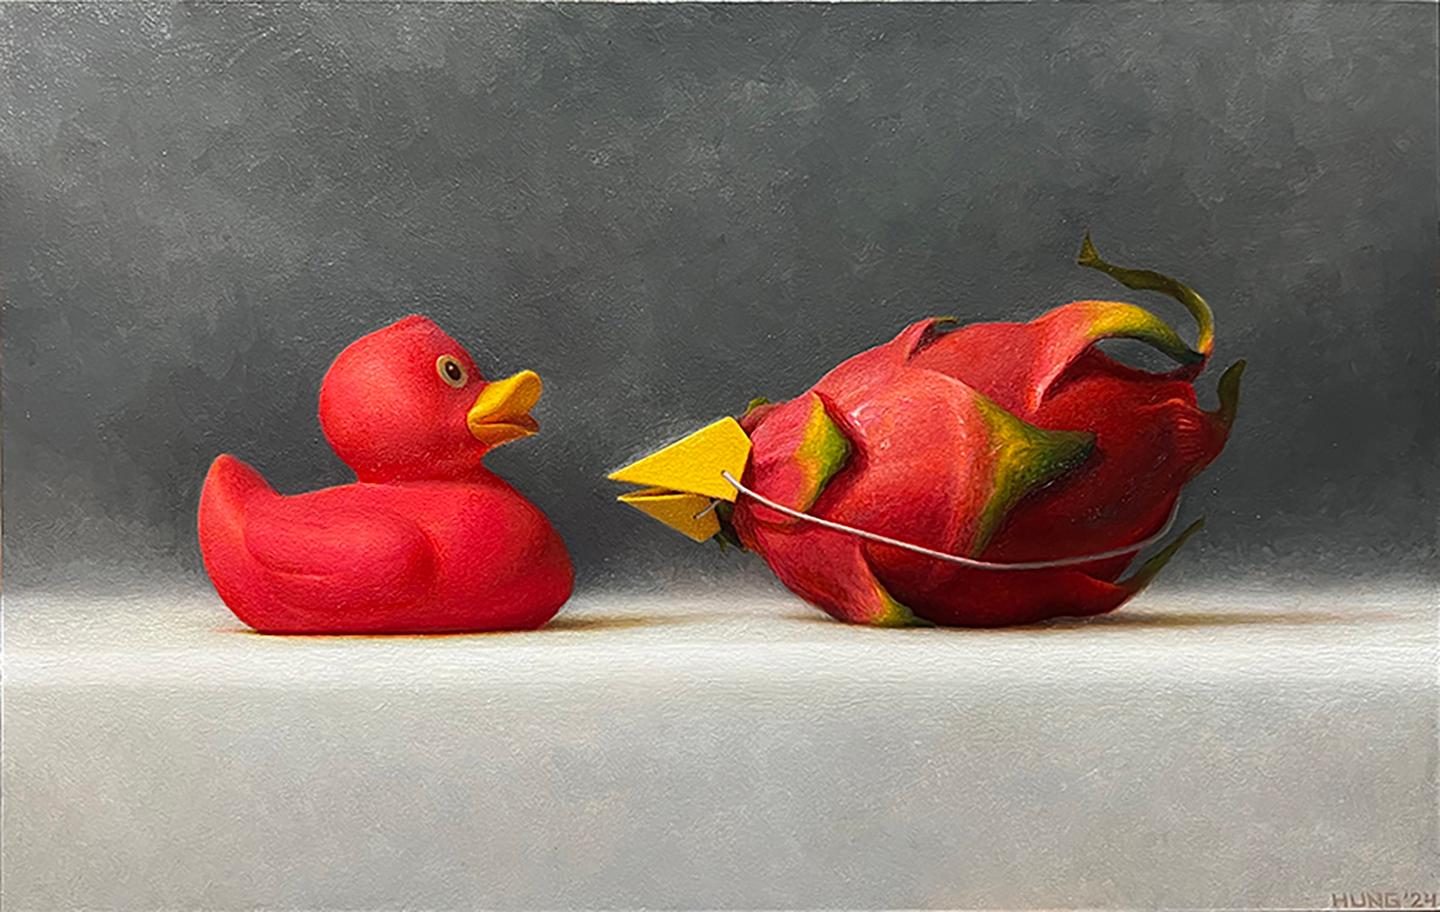 Still-Life Painting Samuel Hung - IMPOSTERS #25 (Fruit du dragon et canard magenta) - Réalisme / Jouet / Humour